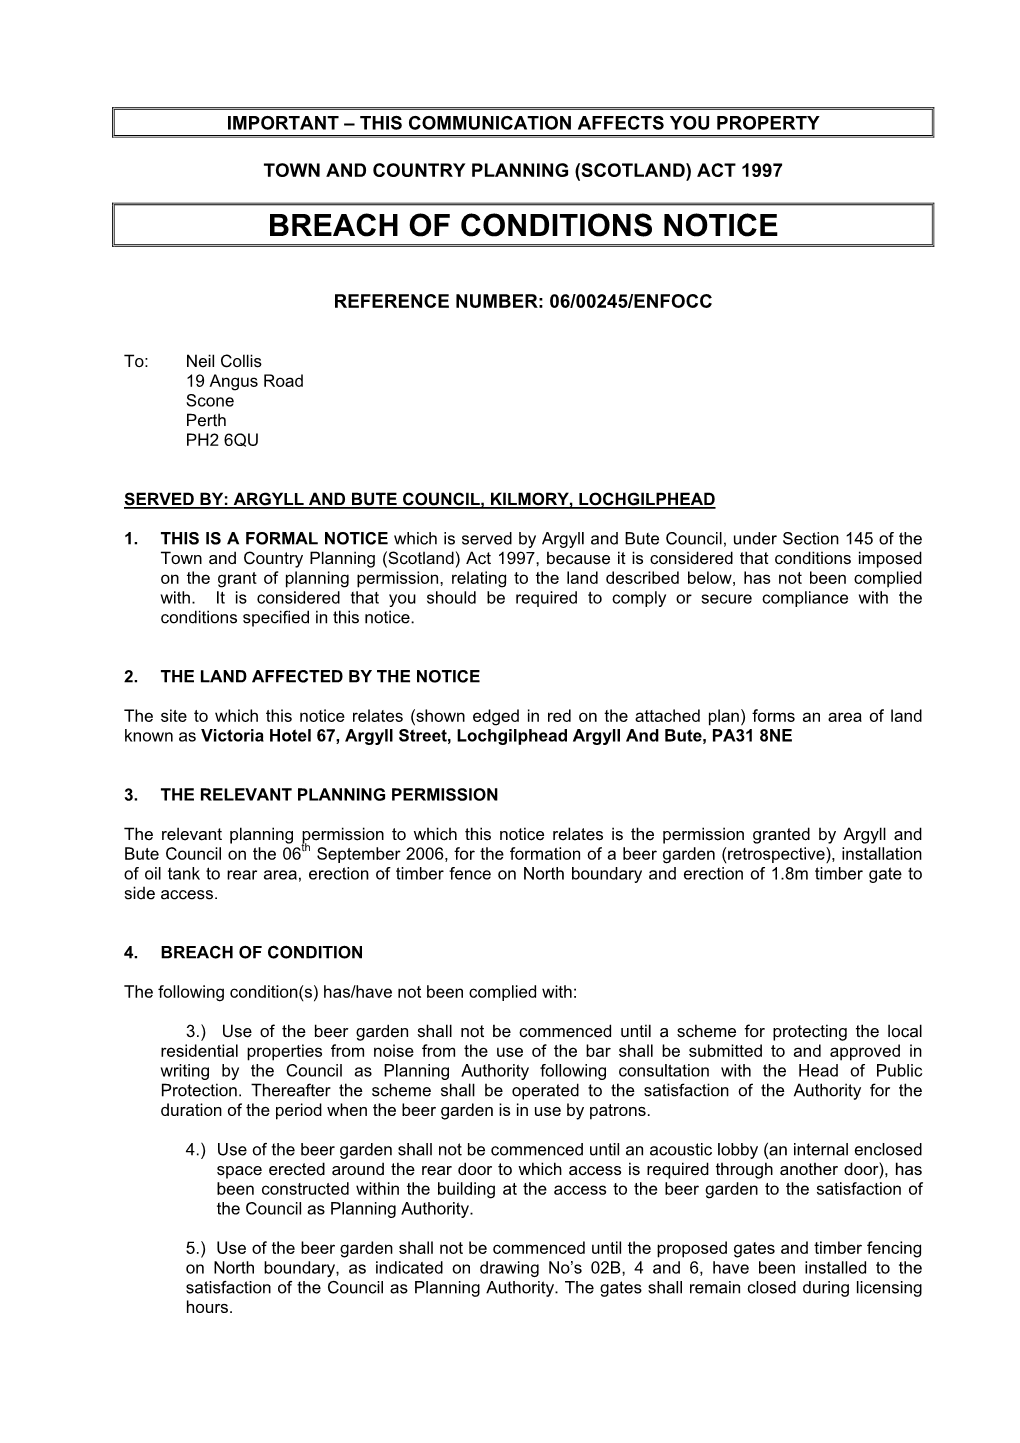 Breach of Conditions Notice